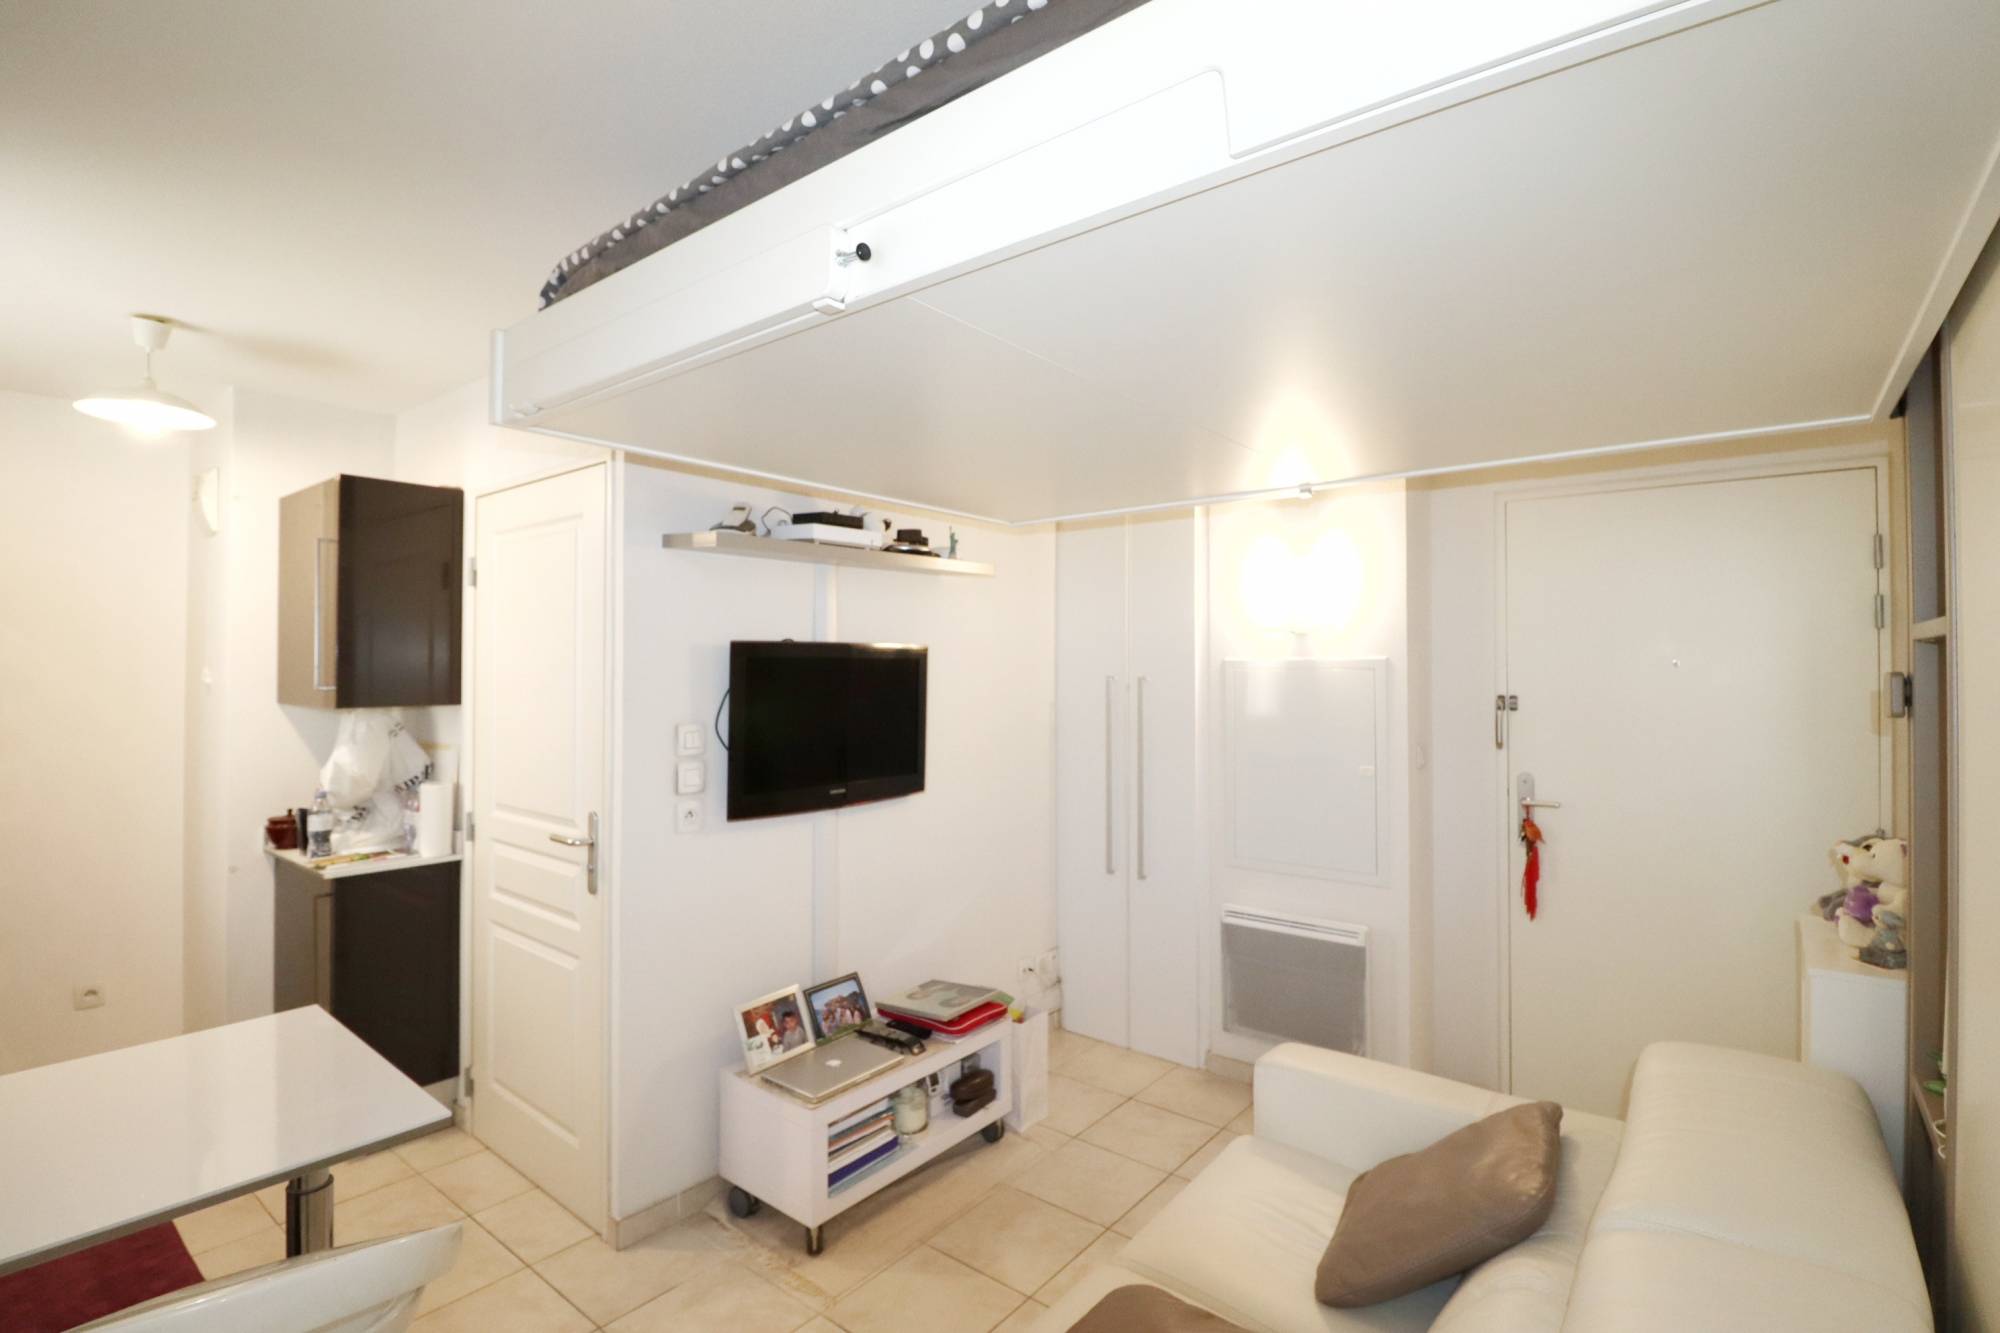 Investissement locatif - Studio 20 m² avec place de parking privative secteur Blancarde Saint Barnabé 13004 Marseille